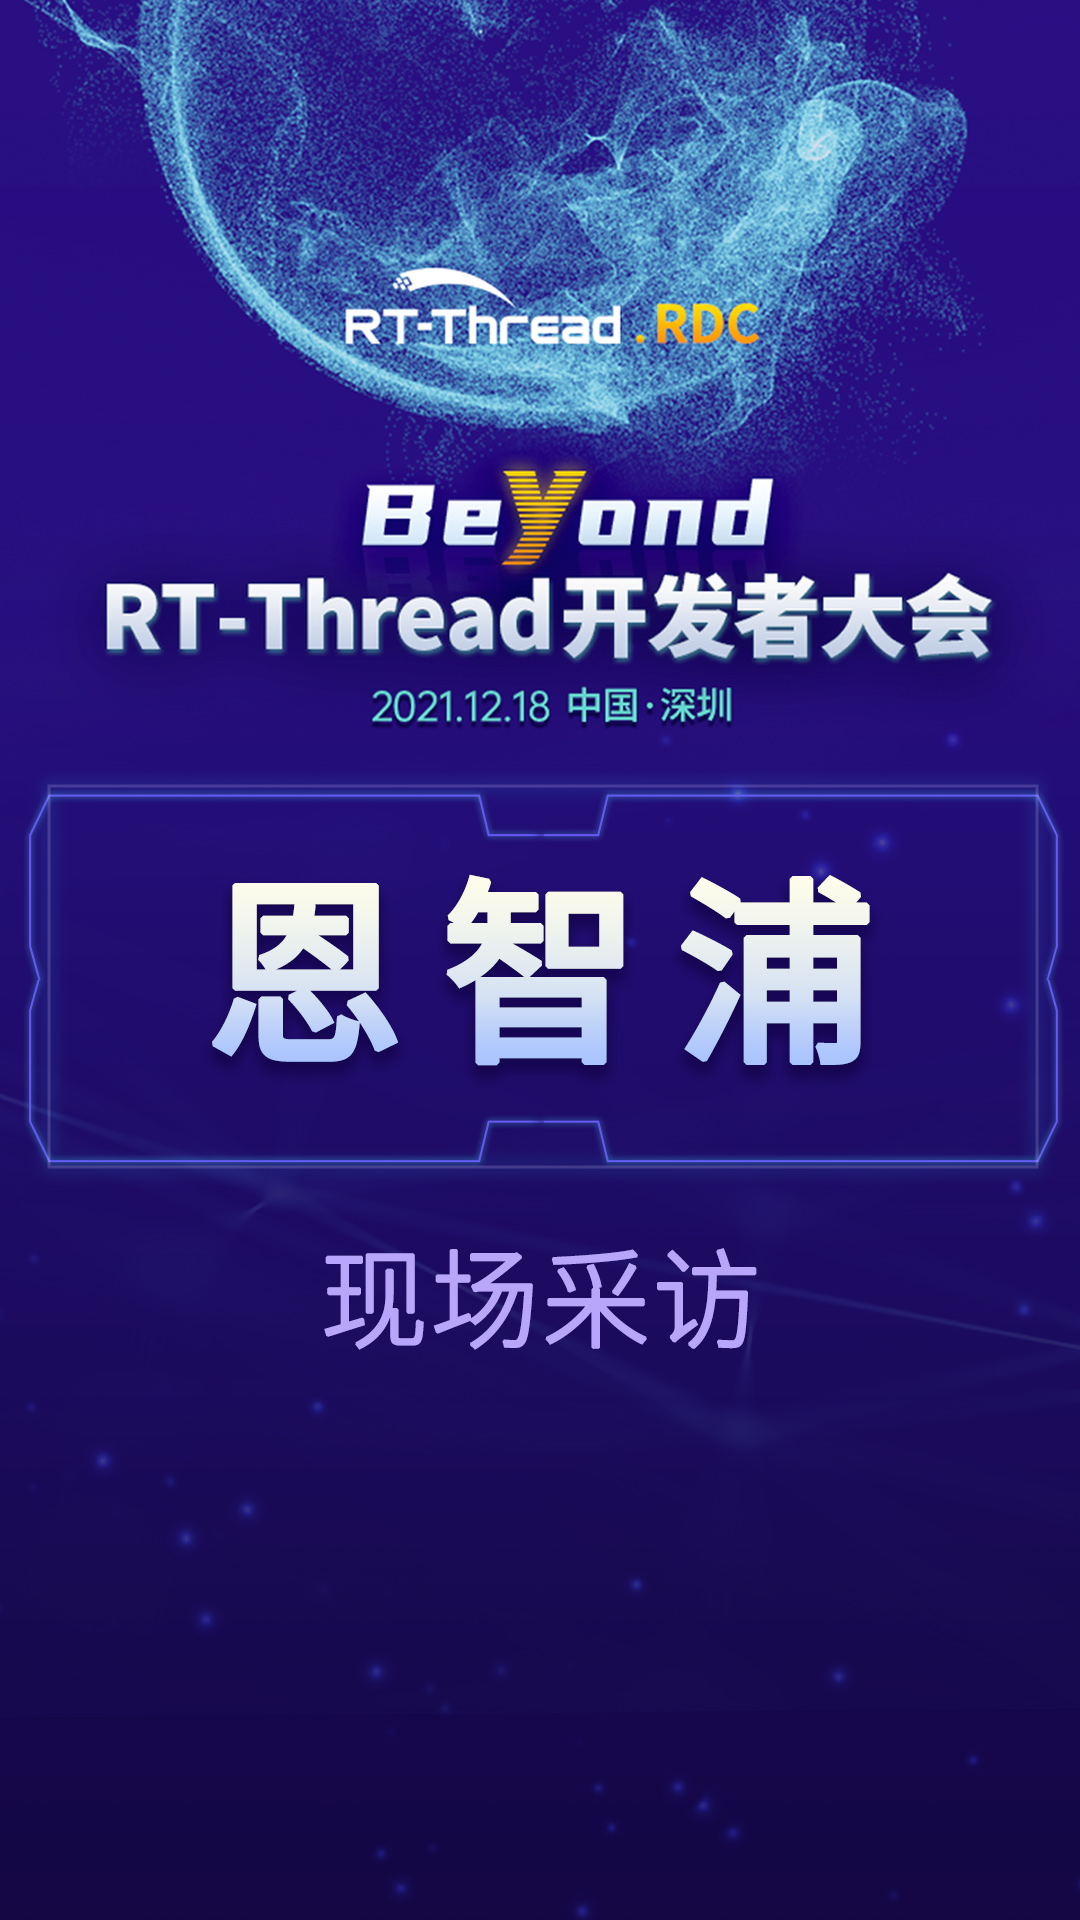 RT-Thread开发者大会-恩智浦企业现场采访#嵌入式开发 